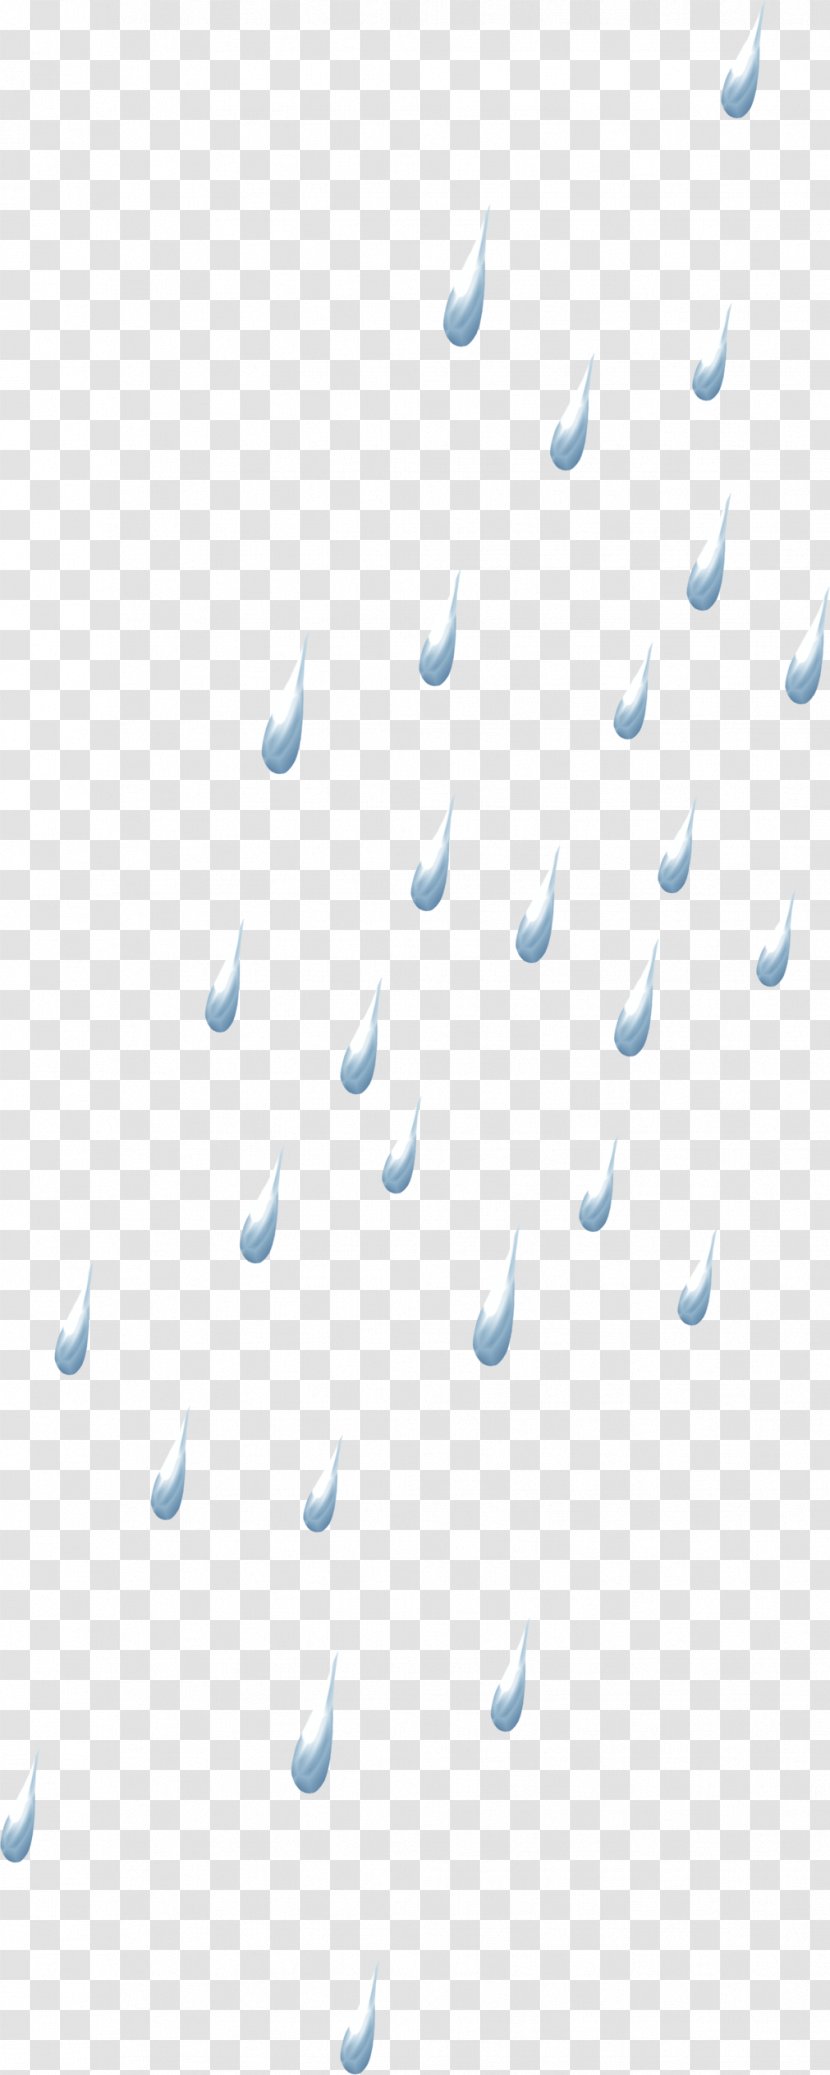 Rain Drop Clip Art - Digital Image Transparent PNG